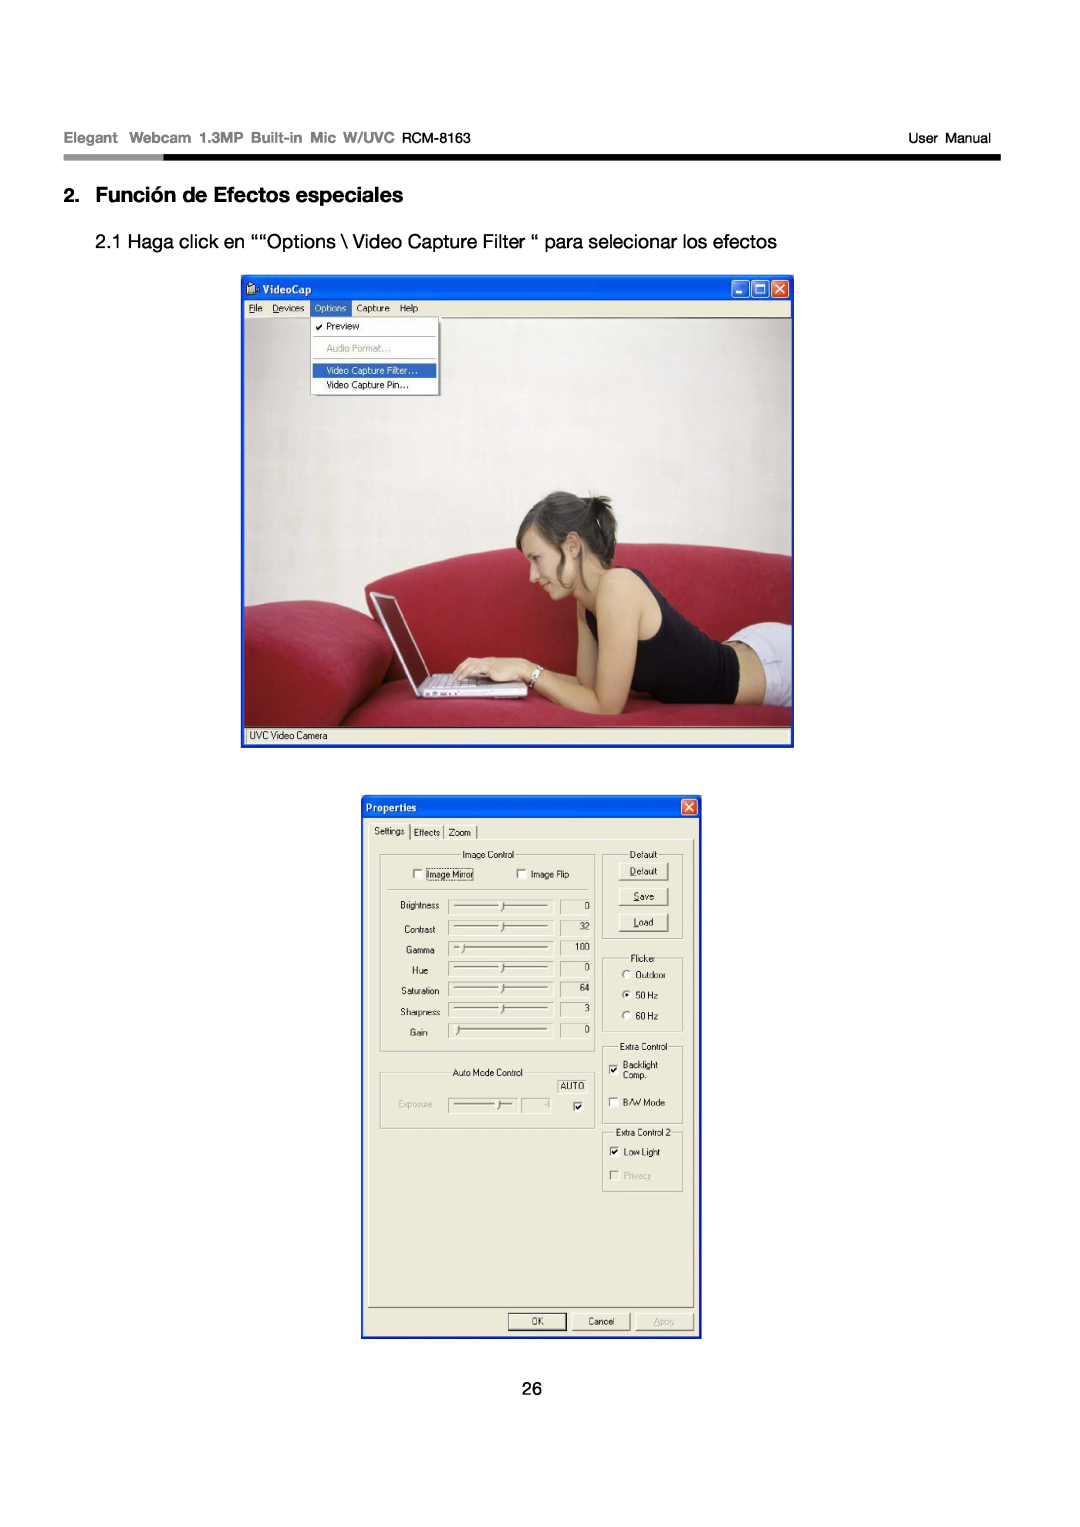 Rosewill user manual Función de Efectos especiales, Elegant Webcam 1.3MP Built-in Mic W/UVC RCM-8163, User Manual 